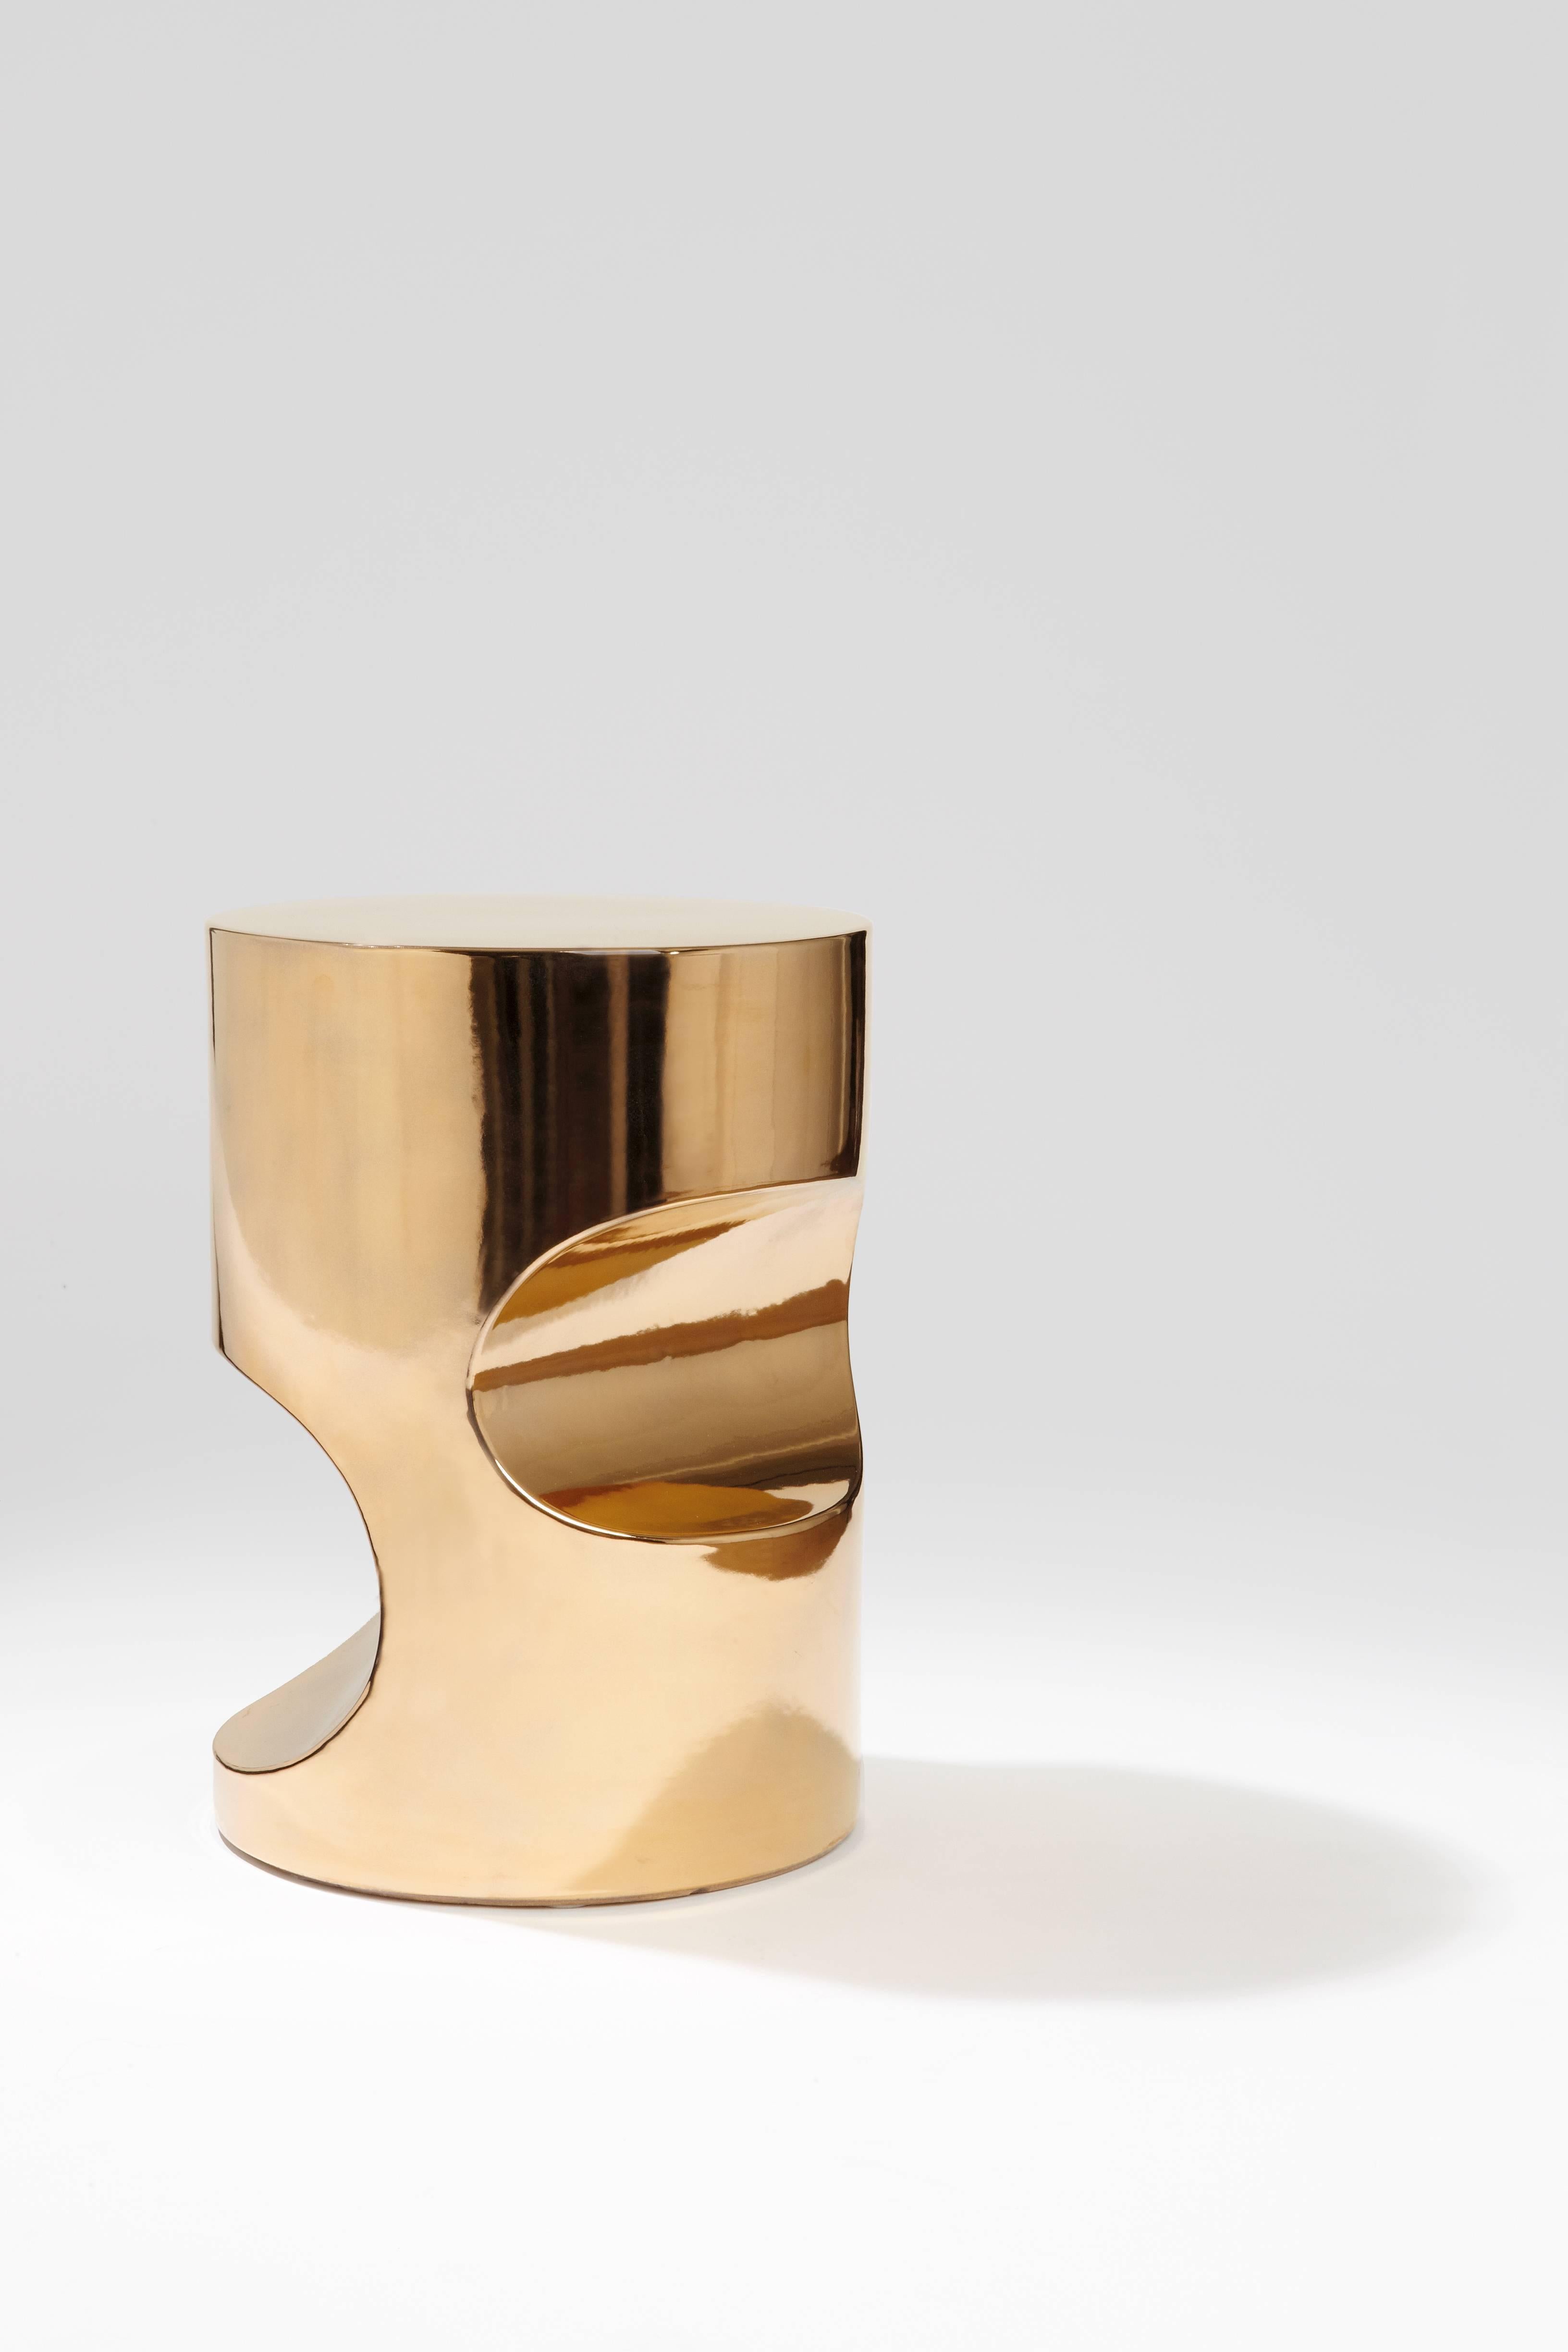 Le designer français Hervé Langlais a créé une série de poufs portant le nom de sa lampe à poser Fetiche. Les poufs fétiches sont en céramique avec différentes finitions émaillées, ils fonctionnent bien ensemble ou positionnés séparément : unis,